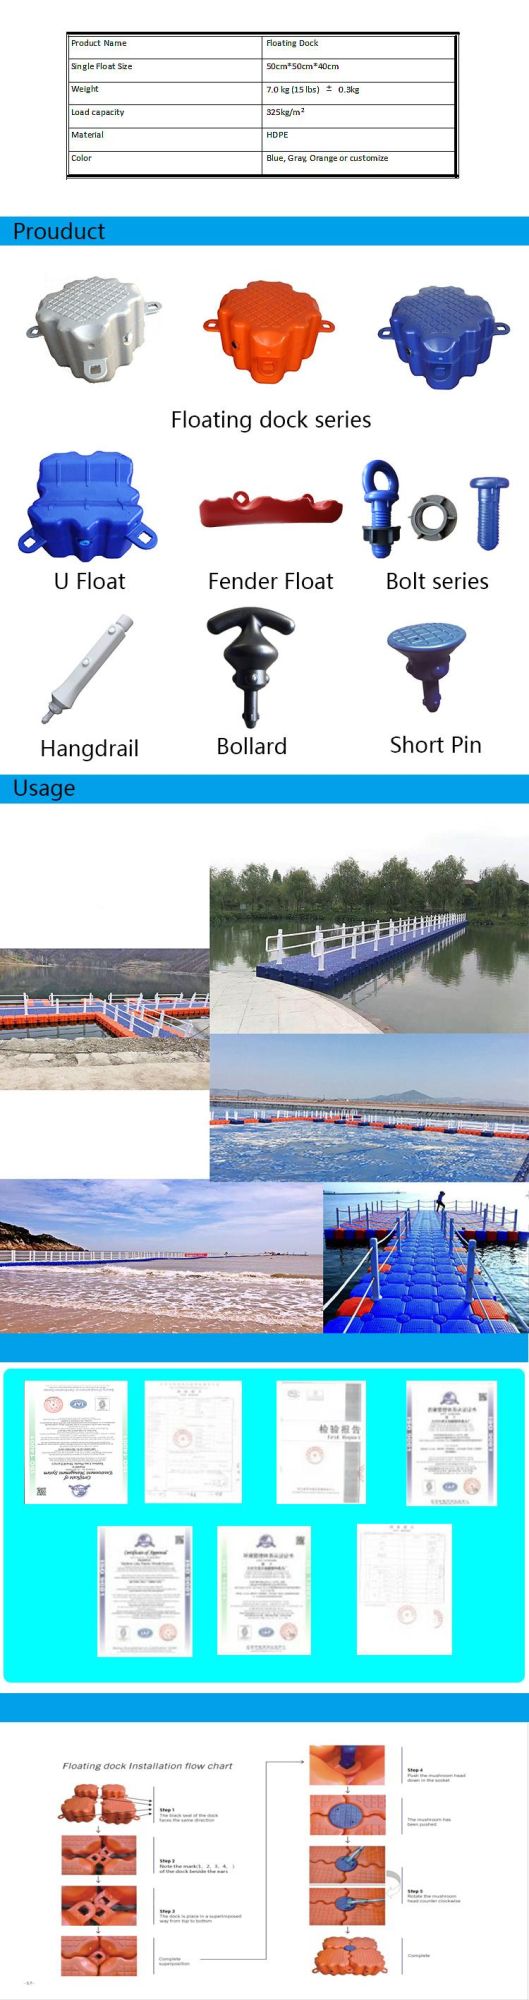 Water Dock, Jet Float Floating Dock, Jet Floating Dock